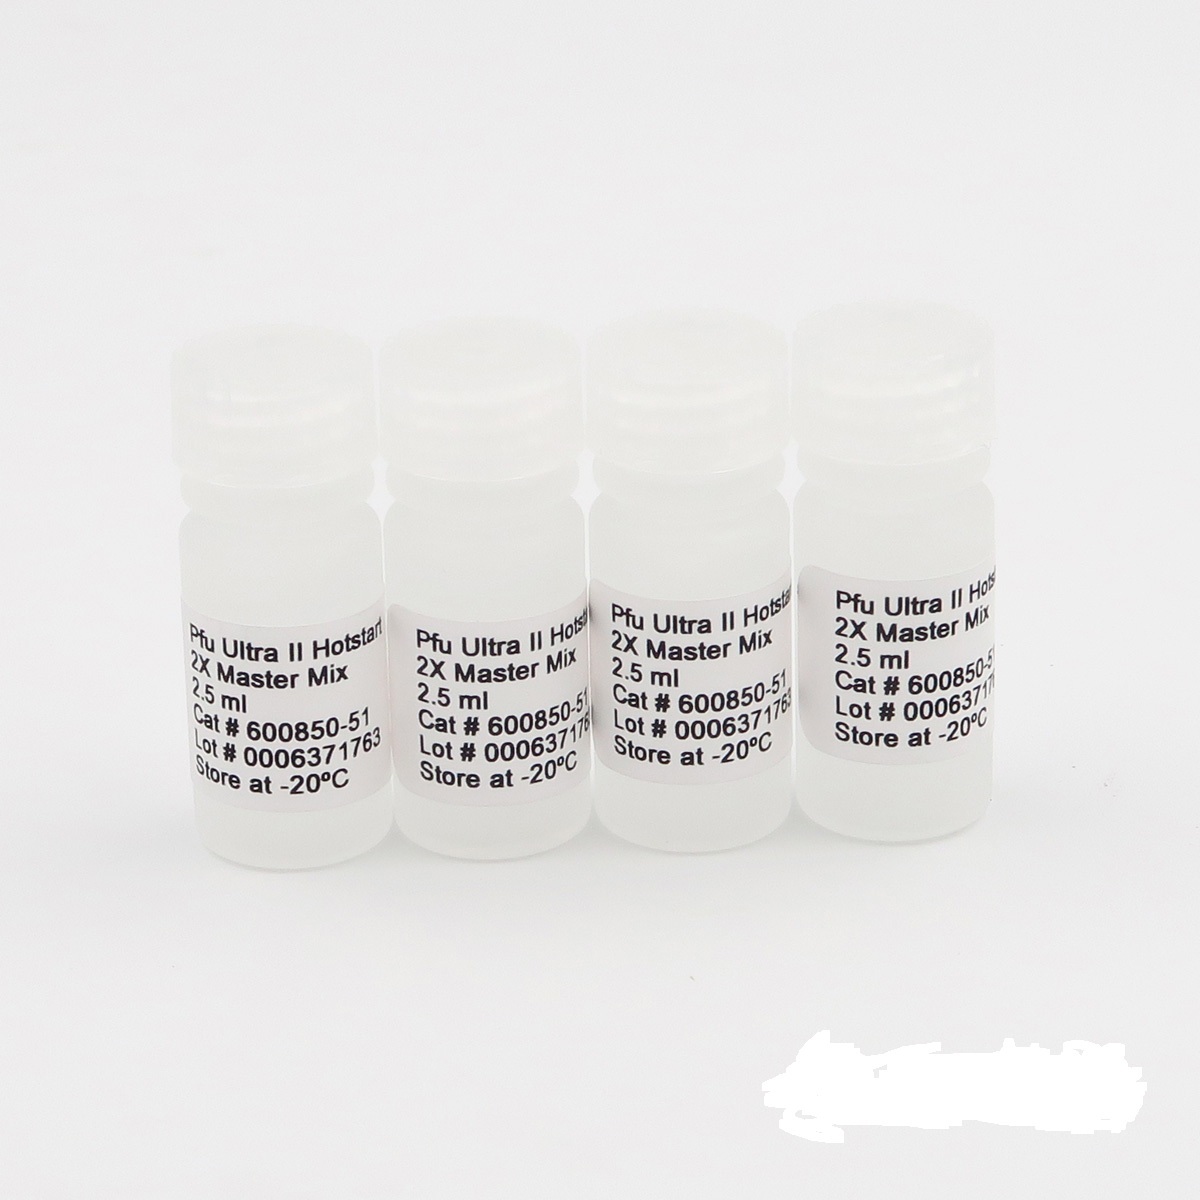 西瓜花叶病毒2型RT-PCR试剂盒